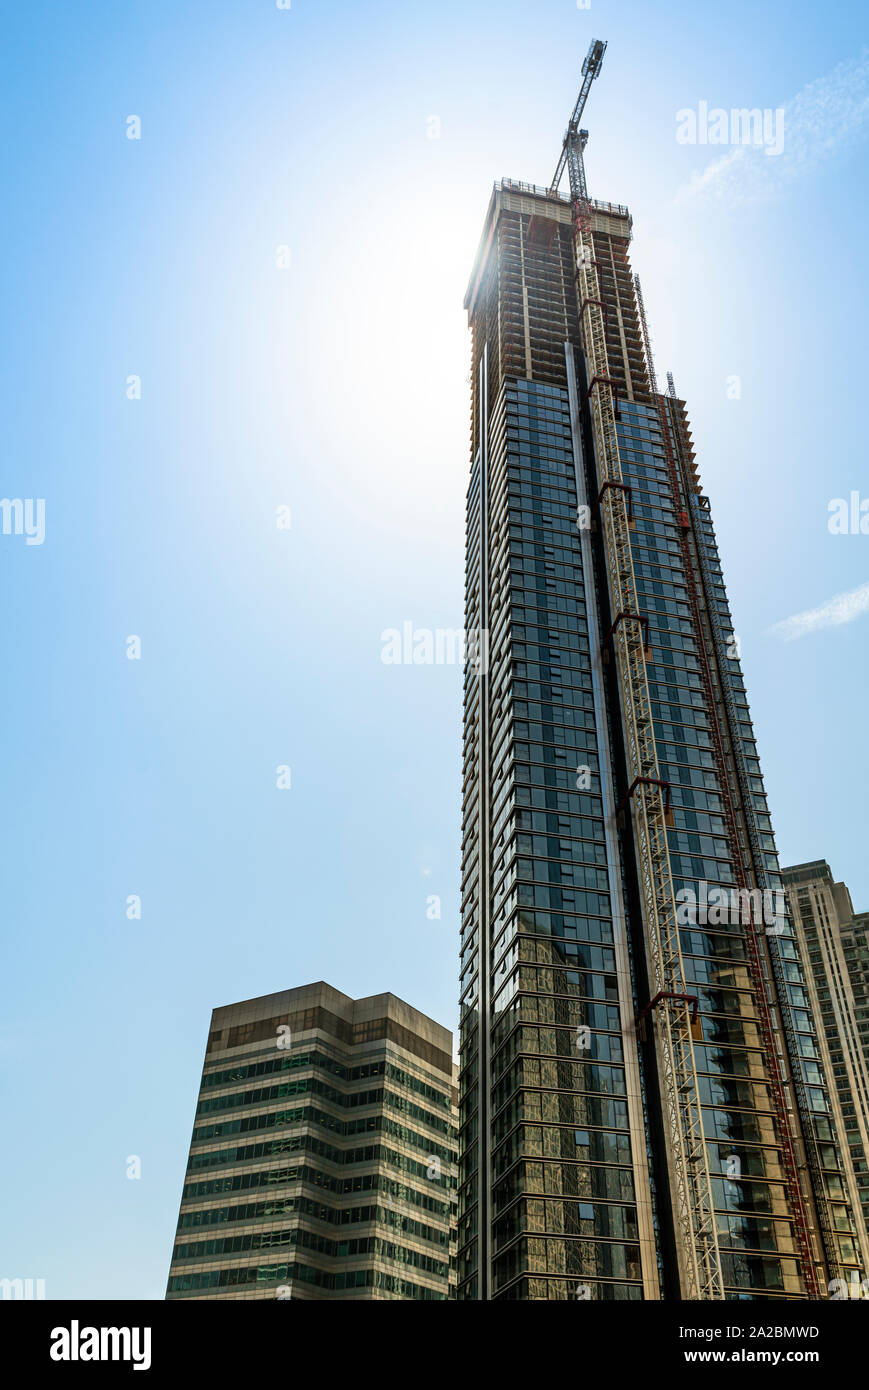 De nouveaux gratte-ciel moderne en construction dans une ville Banque D'Images